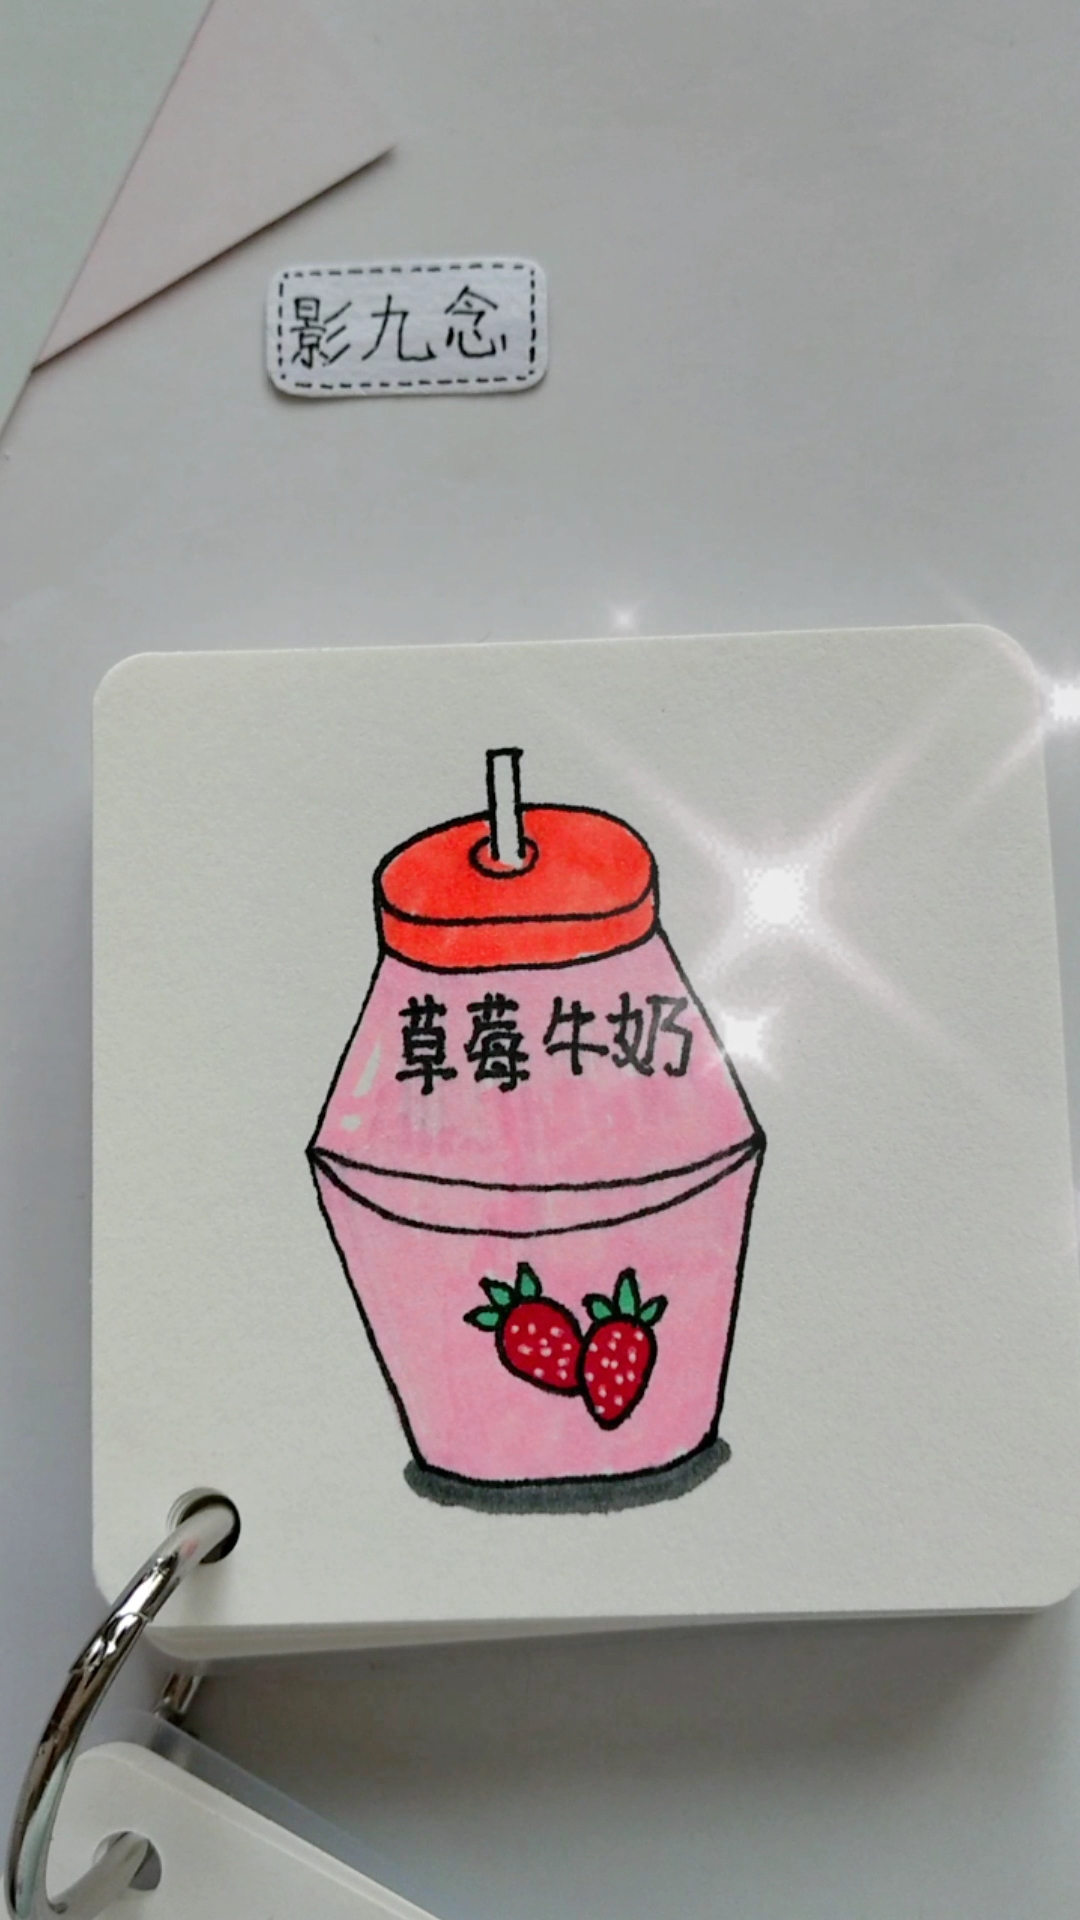 草莓牛奶的简笔画图片